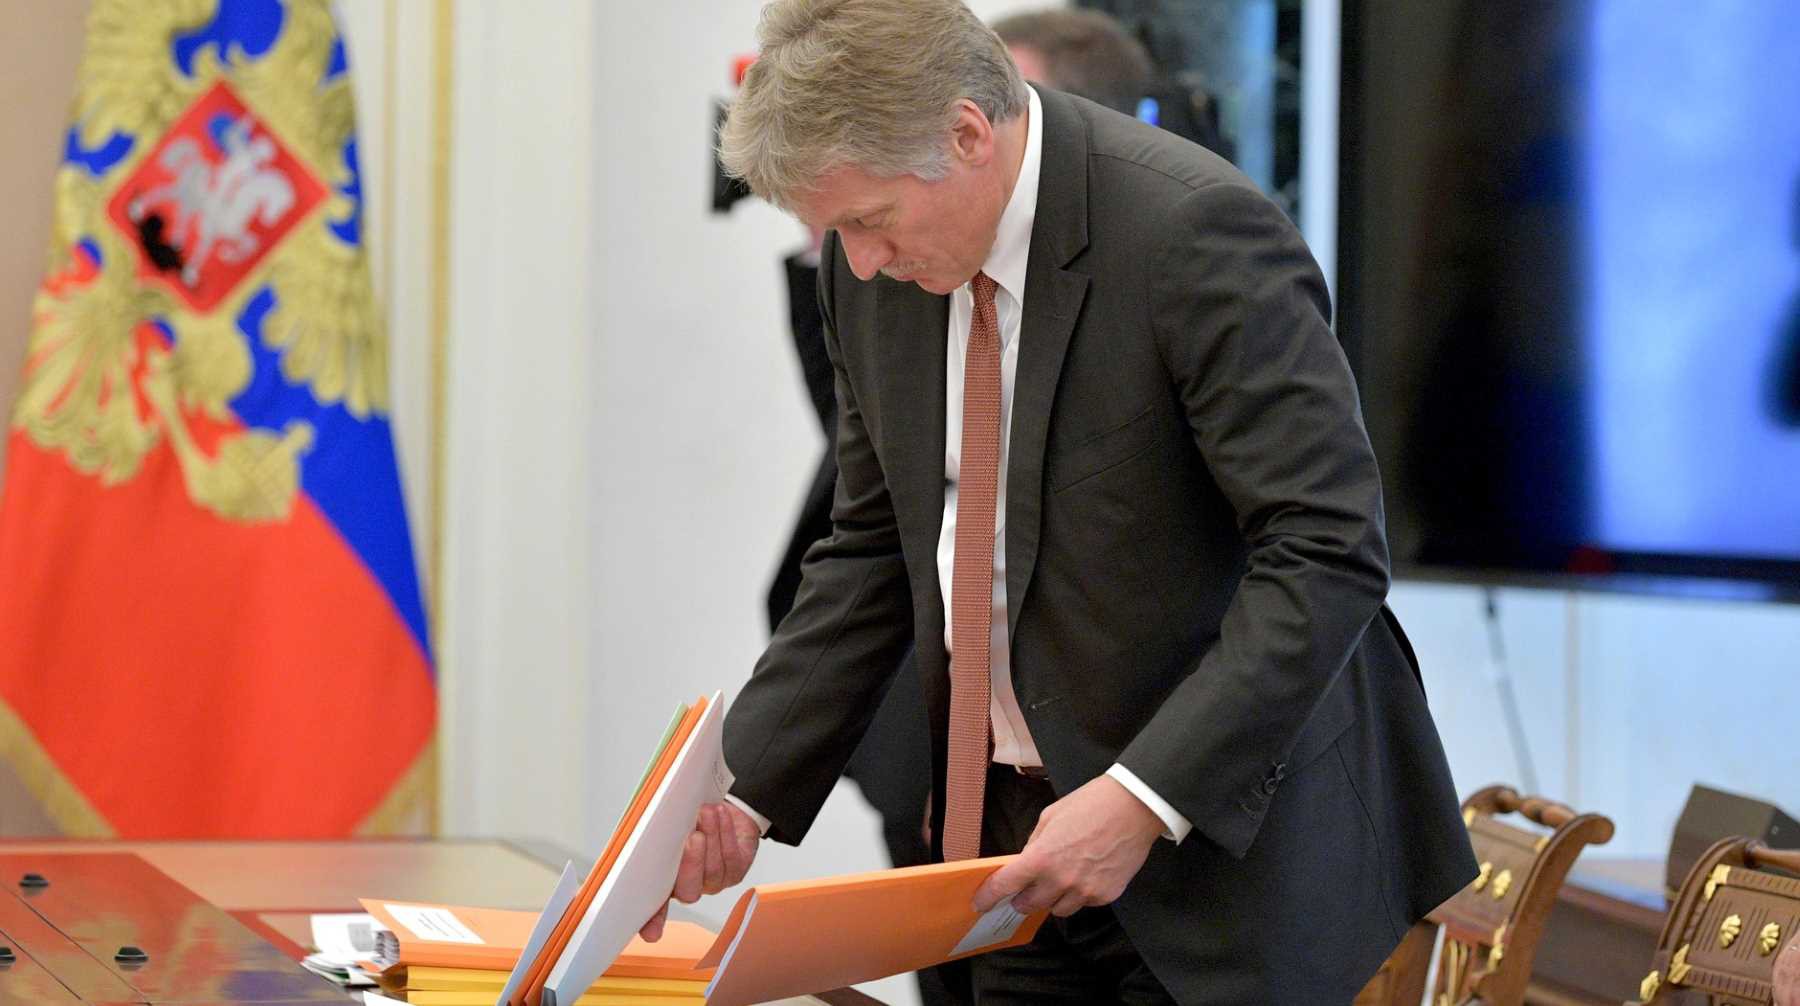 Dailystorm - В Кремле пока не нашли расстроивший Путина учебник по истории